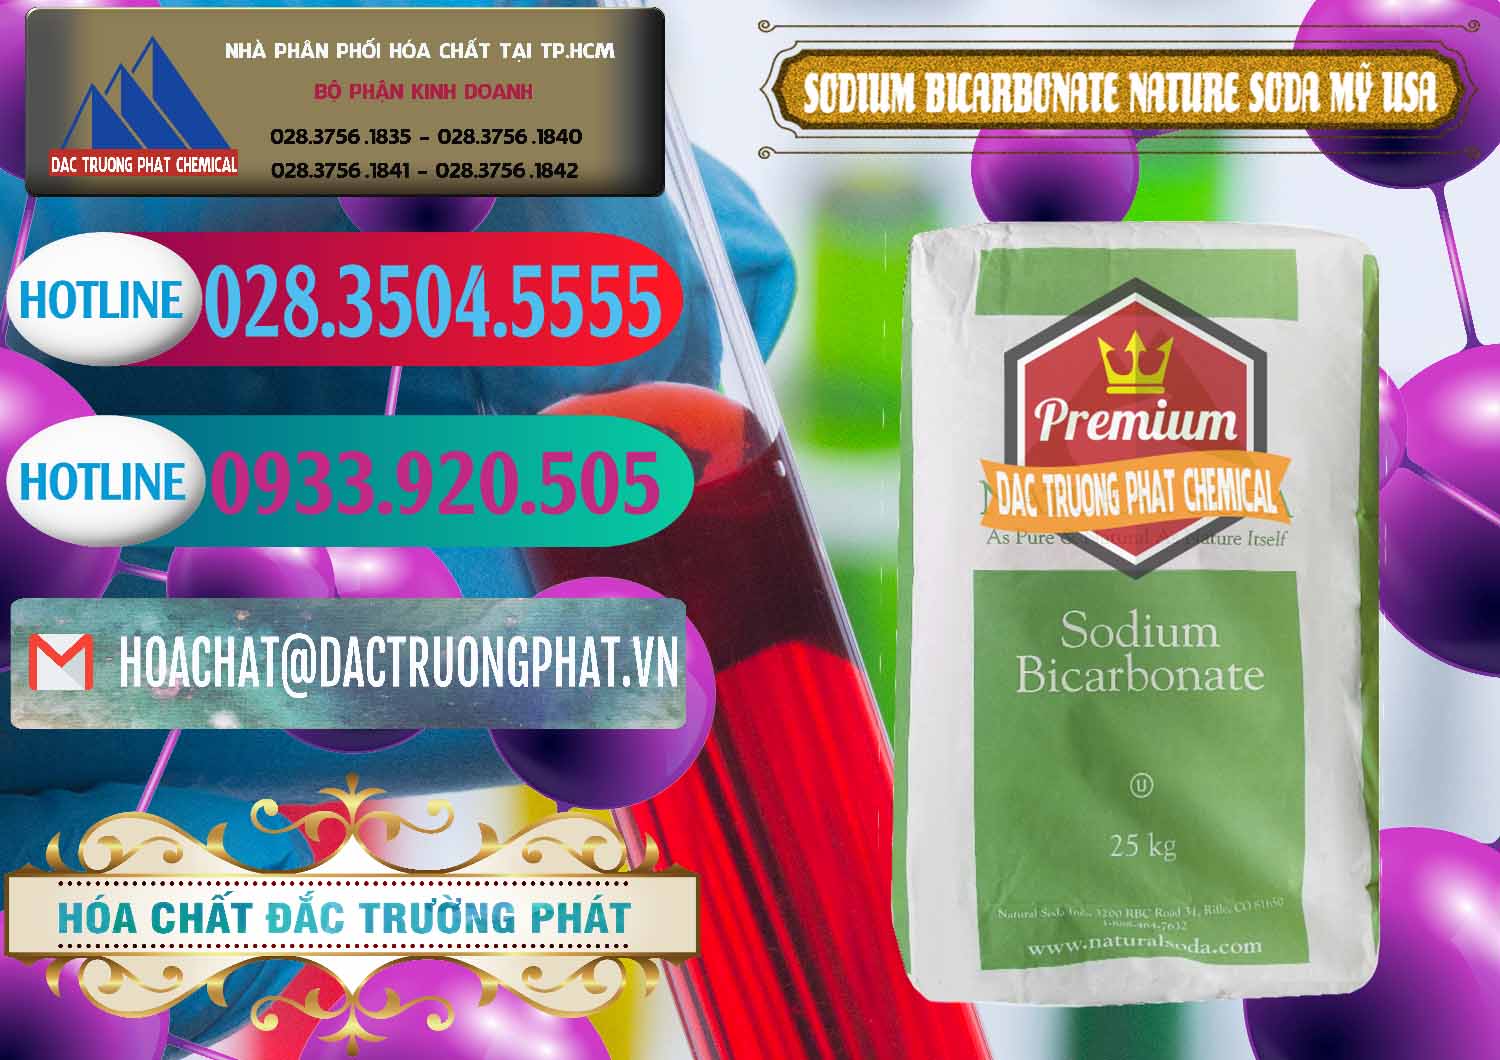 Nơi phân phối - bán Sodium Bicarbonate – Bicar NaHCO3 Food Grade Nature Soda Mỹ USA - 0256 - Đơn vị chuyên kinh doanh & phân phối hóa chất tại TP.HCM - truongphat.vn